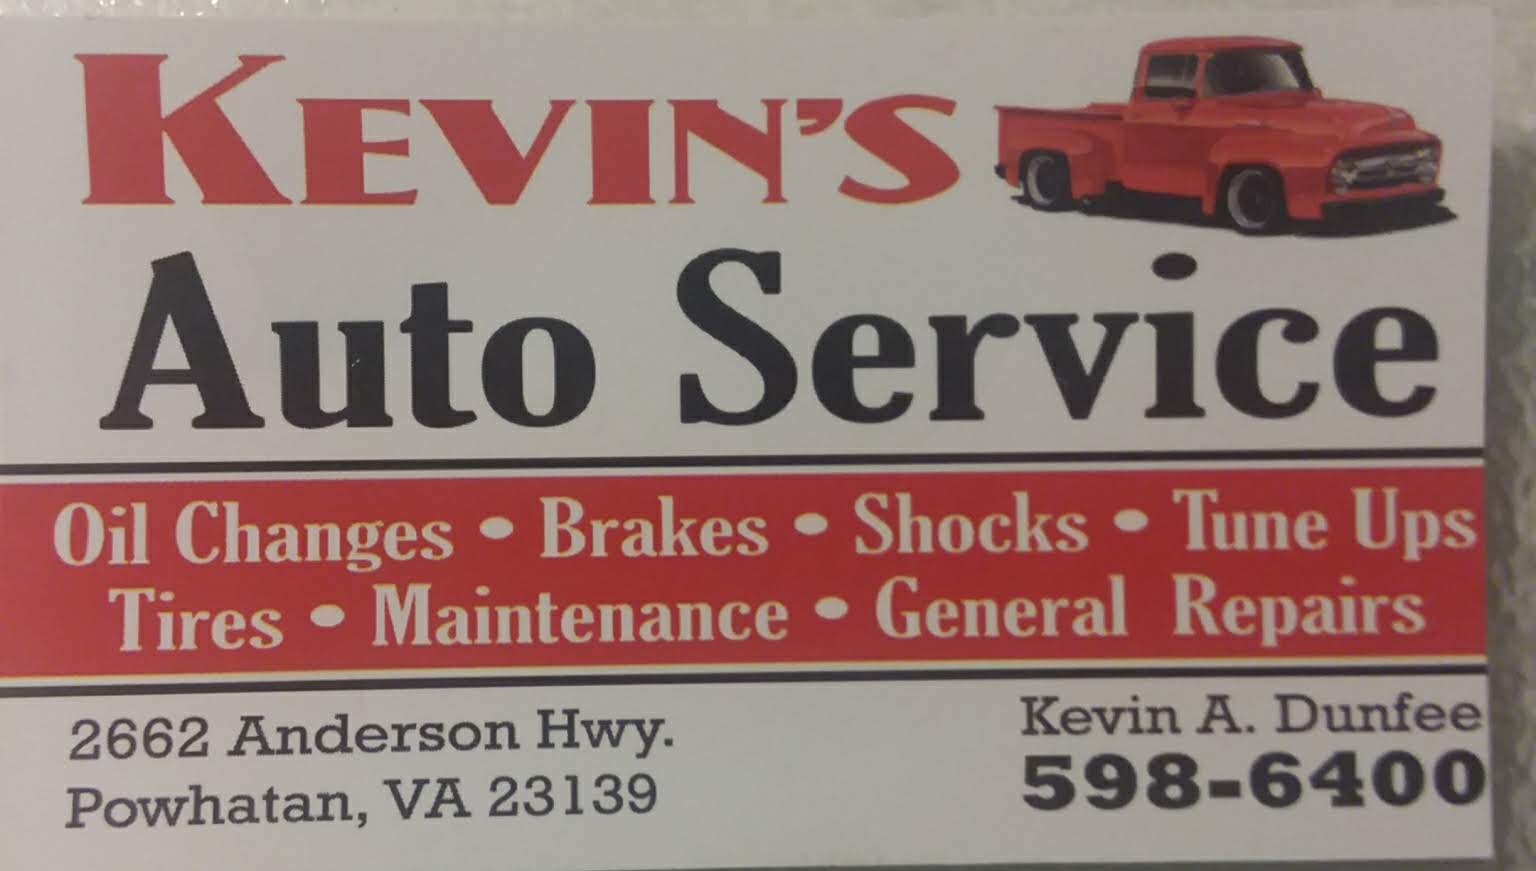 Kevin's Auto Service 2662 Anderson Hwy, Powhatan Virginia 23139